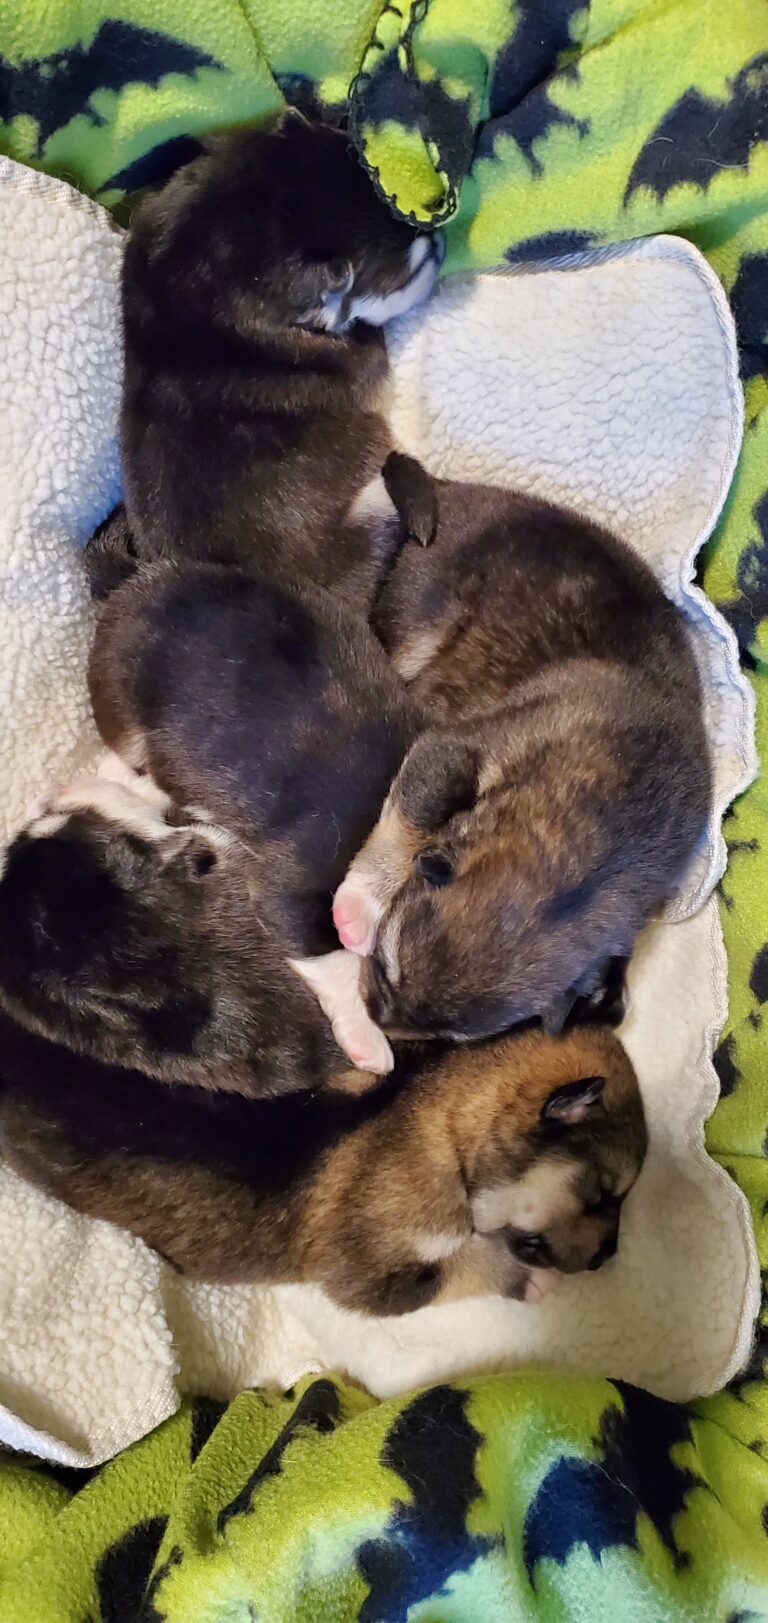 Basket of Puppies, 1 week